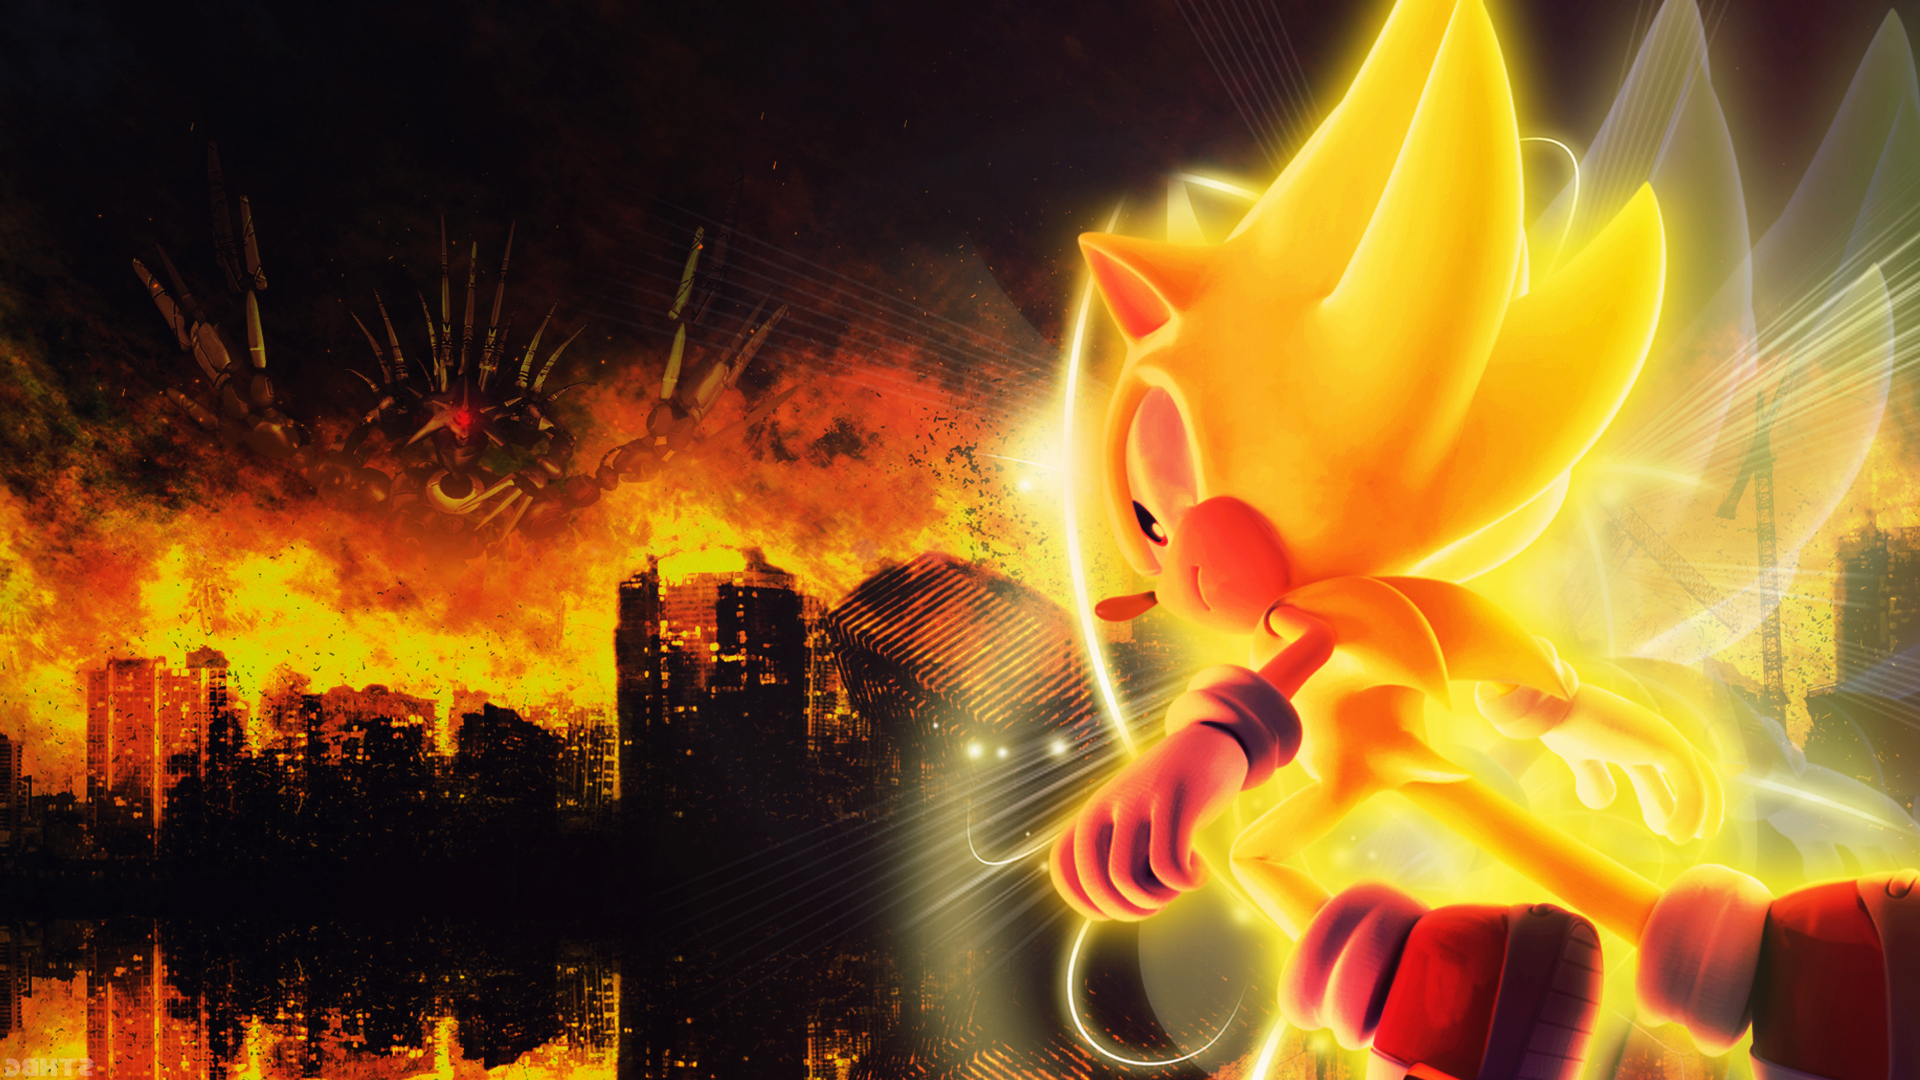 Sonic Sonic The Hedgehog Metal Sonic Sega Video Games 1920x1080